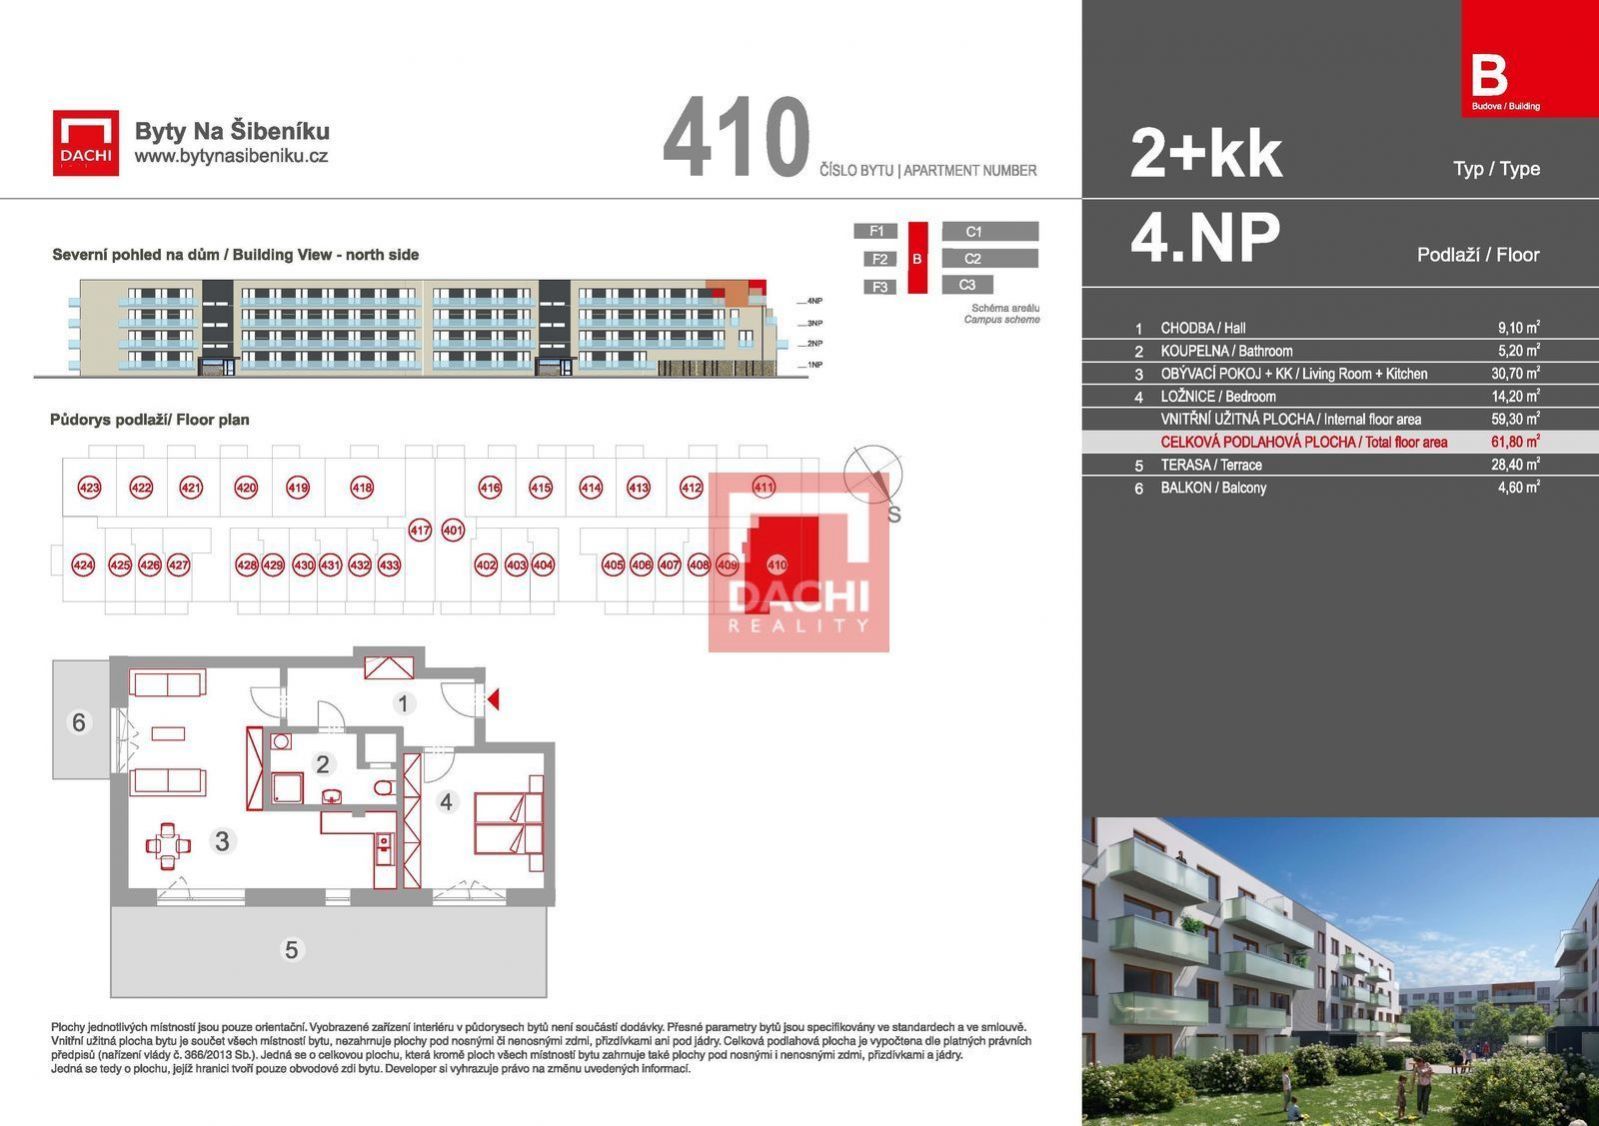 Prodej novostavby bytu B.410  2+kk  61,8m s terasou 33m, Olomouc, Byty Na Šibeníku II.etapa, obrázek č. 3